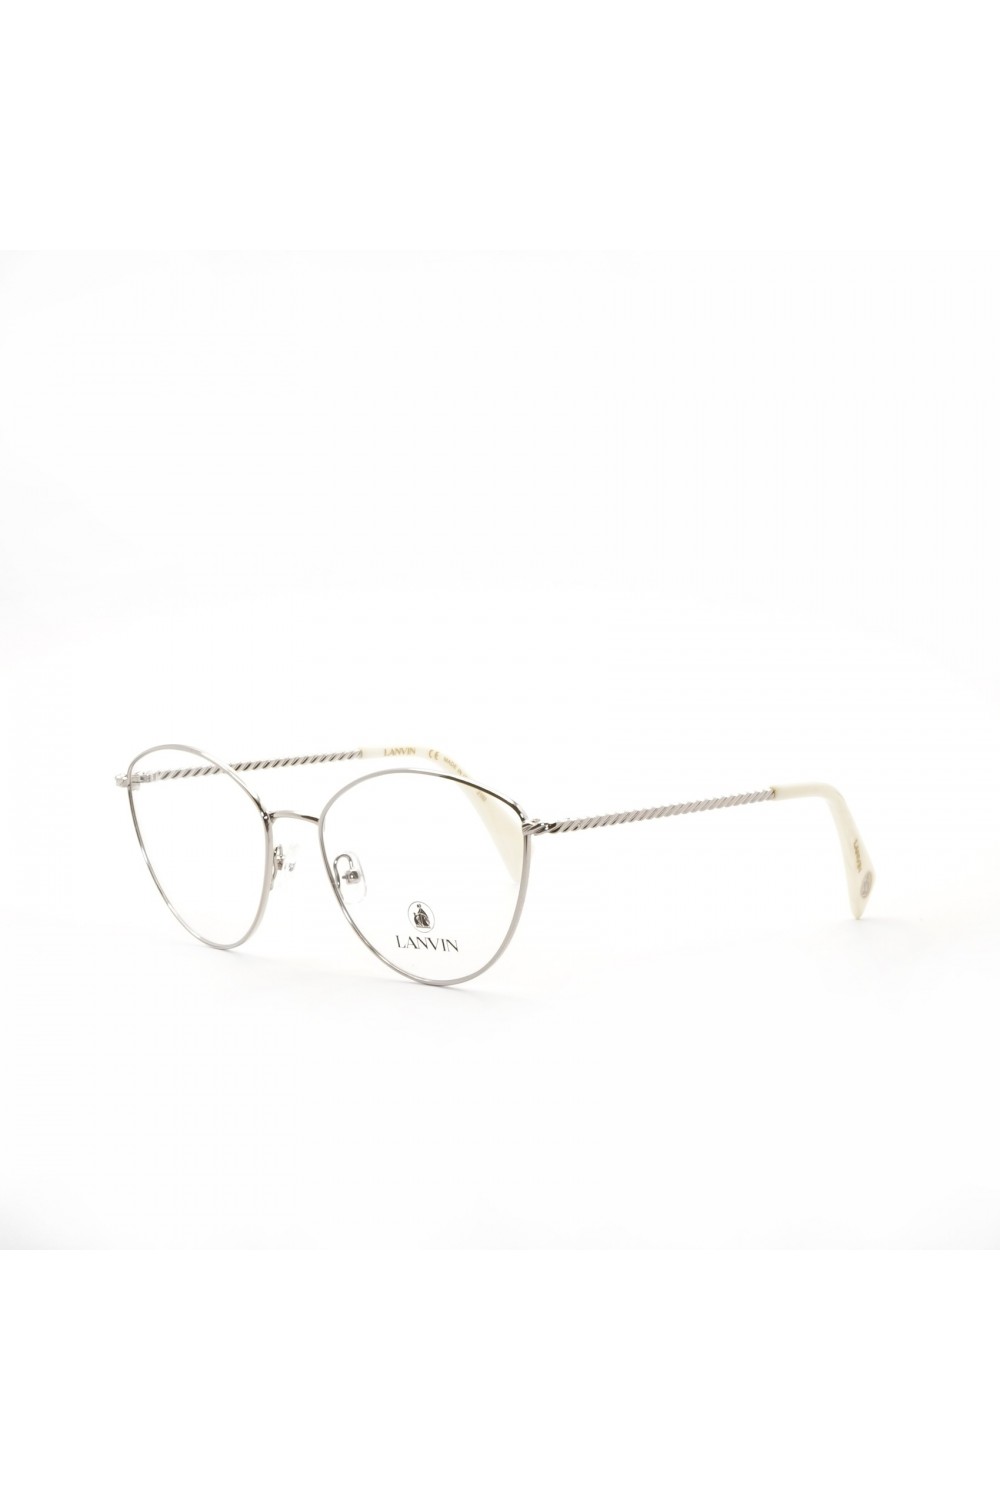 Lanvin - Occhiali da vista in metallo cat eye per donna silver - LNV2106 047